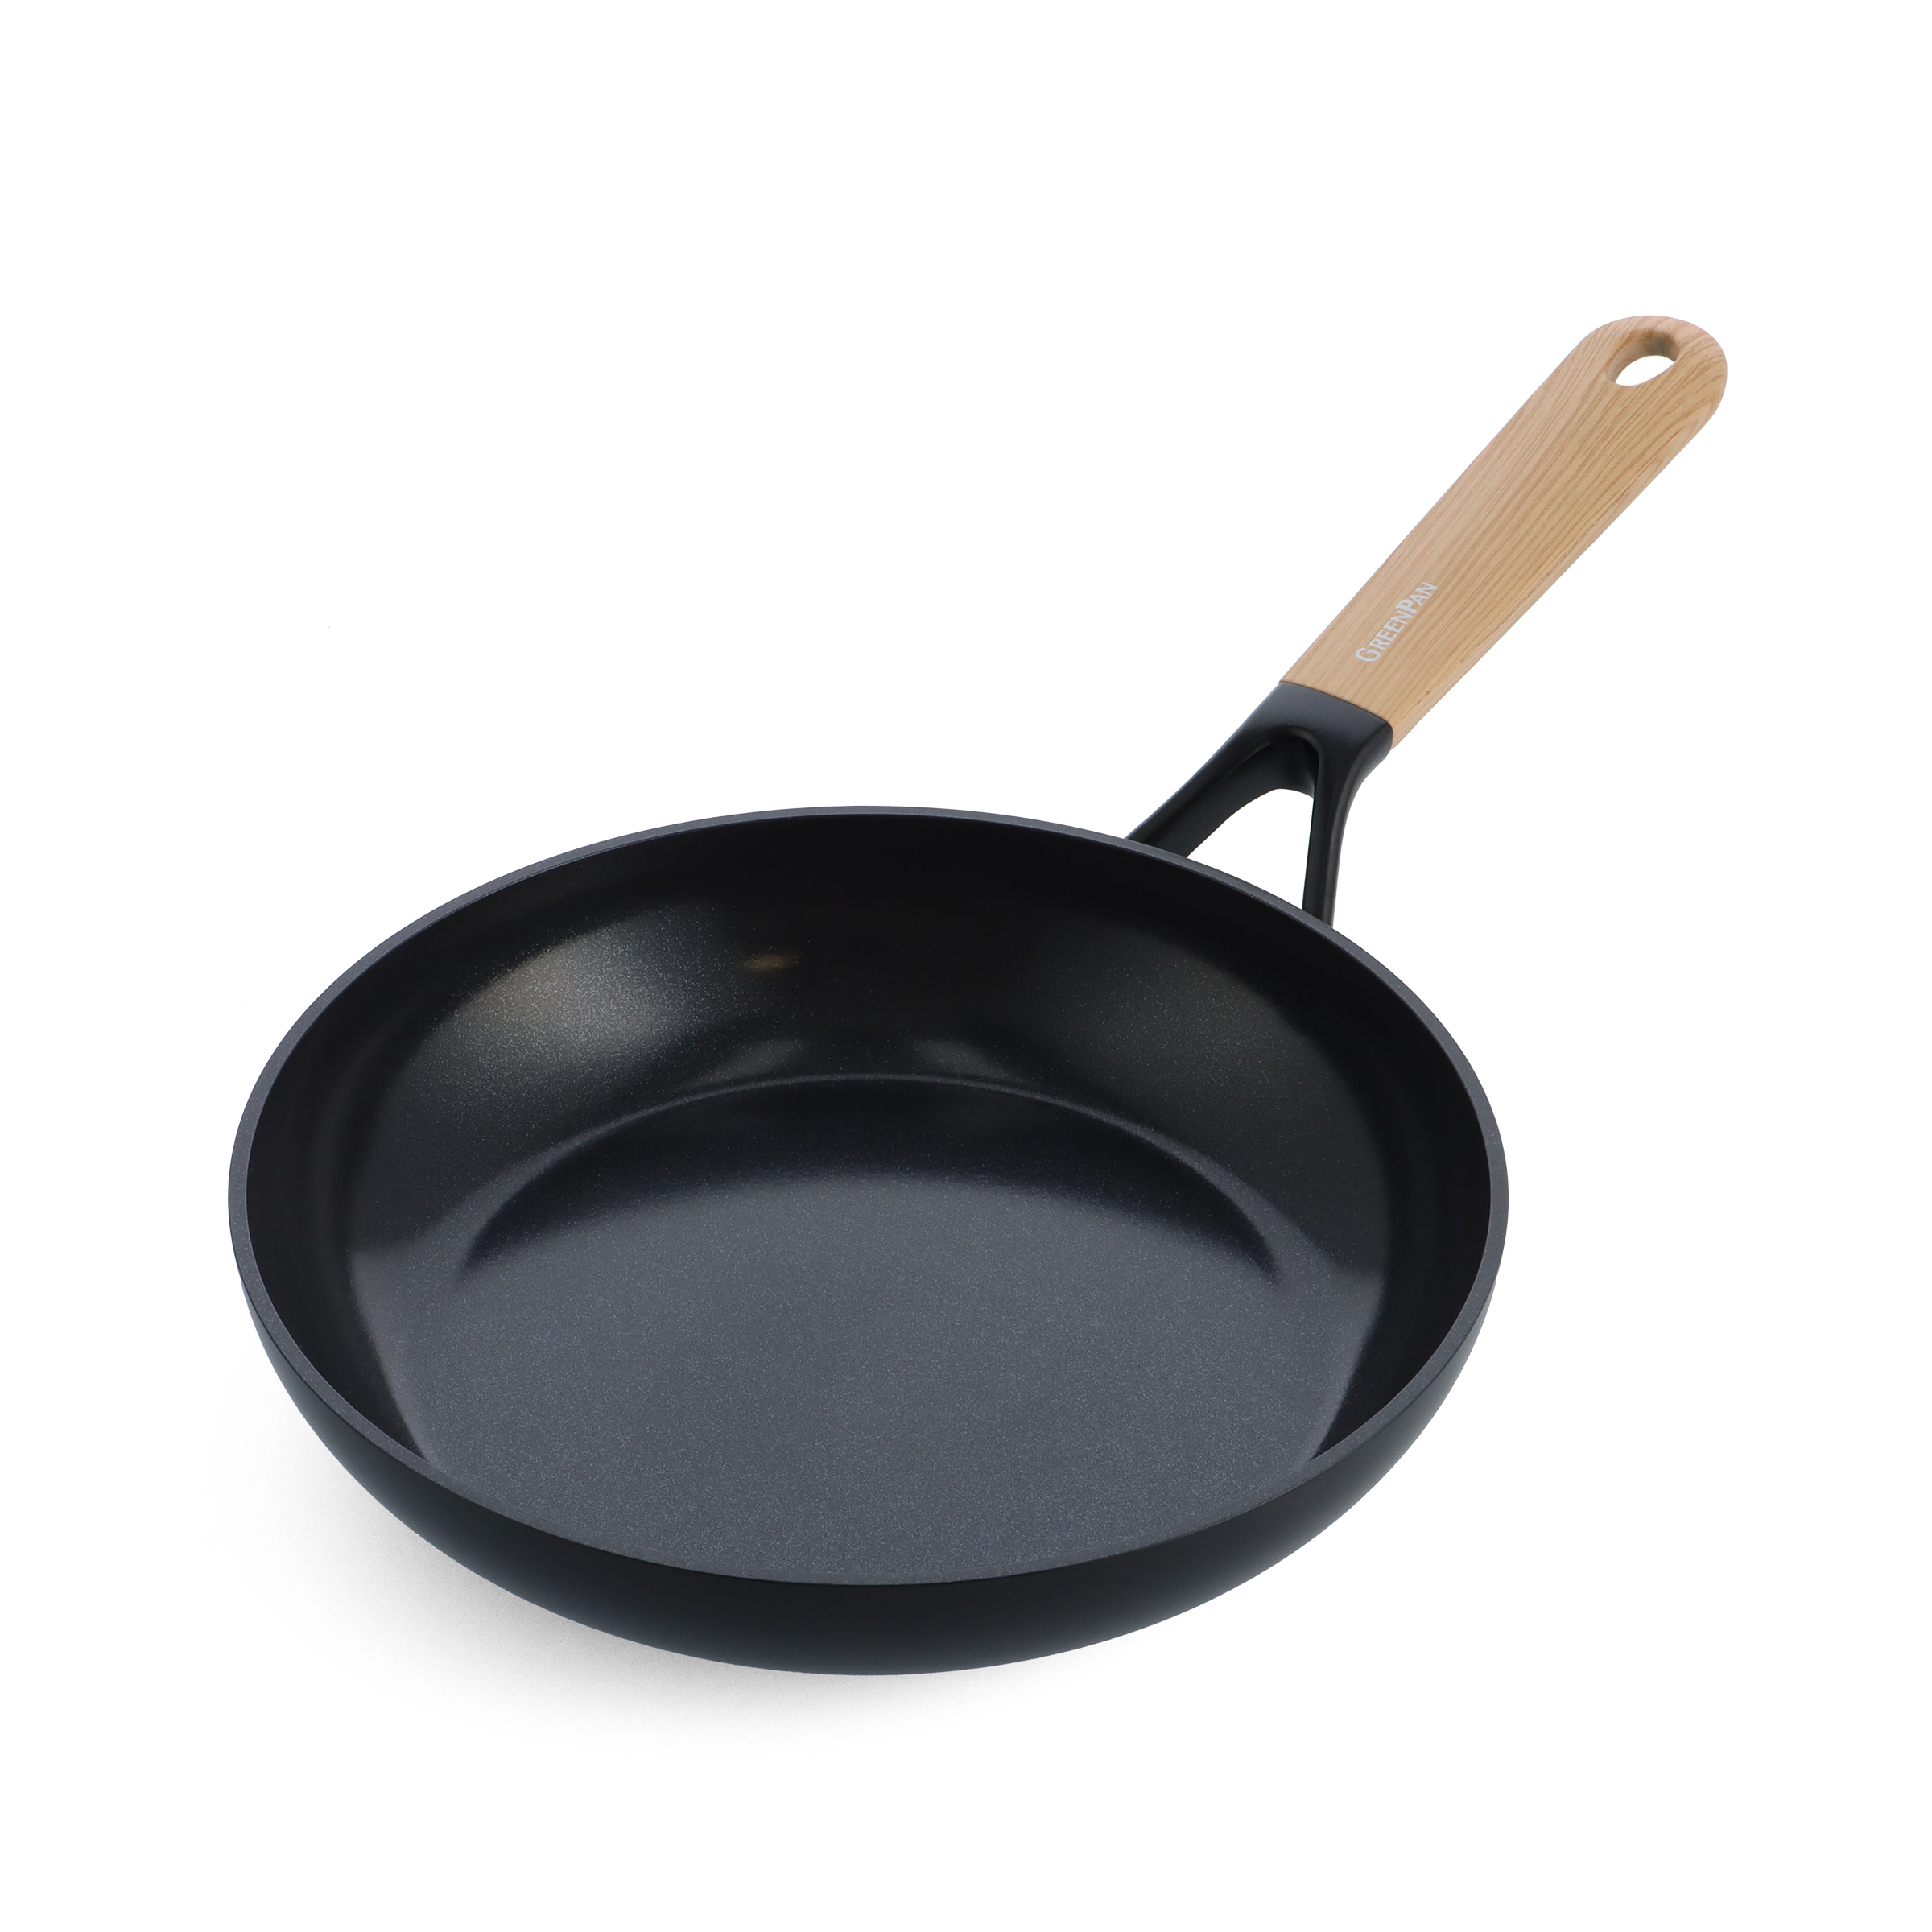 Tasty+ Frying Pan, 24 cm, Non-Stick - Fir Green